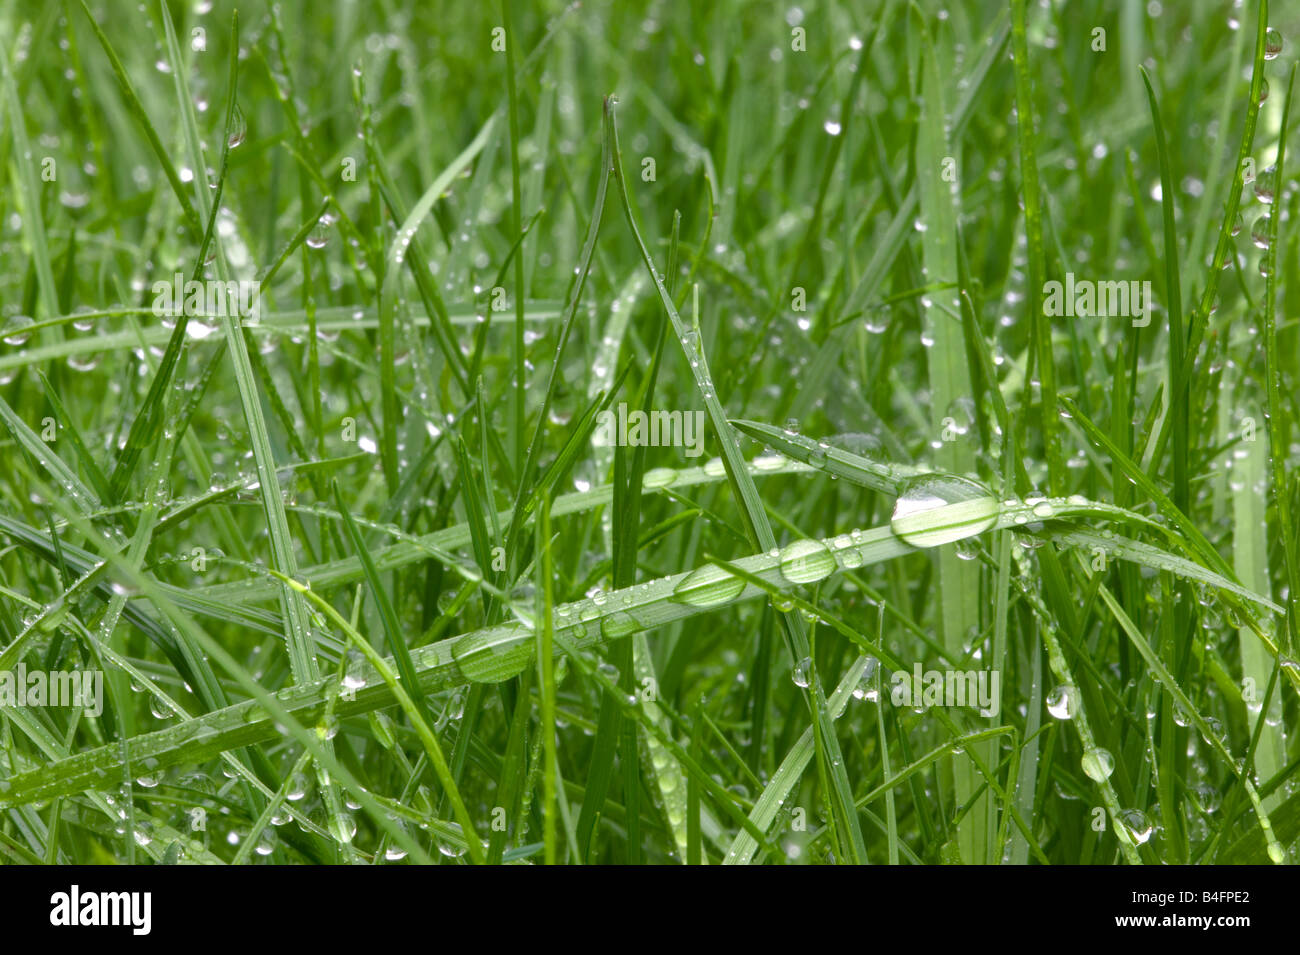 L'herbe verte humide avec des gouttelettes d'eau sur Banque D'Images